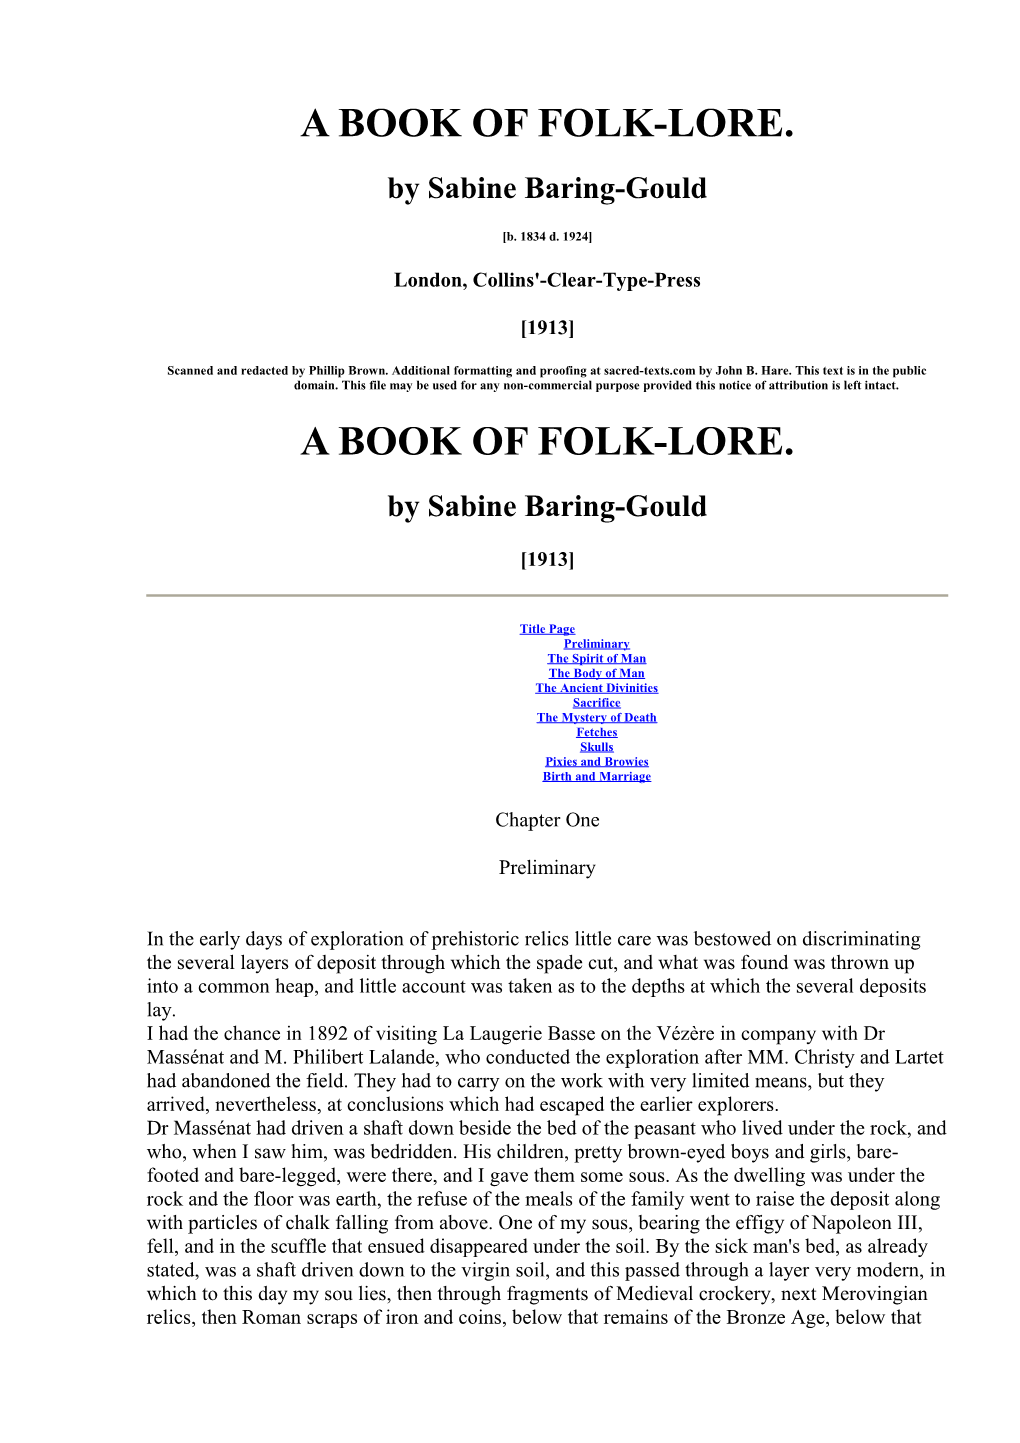 A Book of Folk-Lore